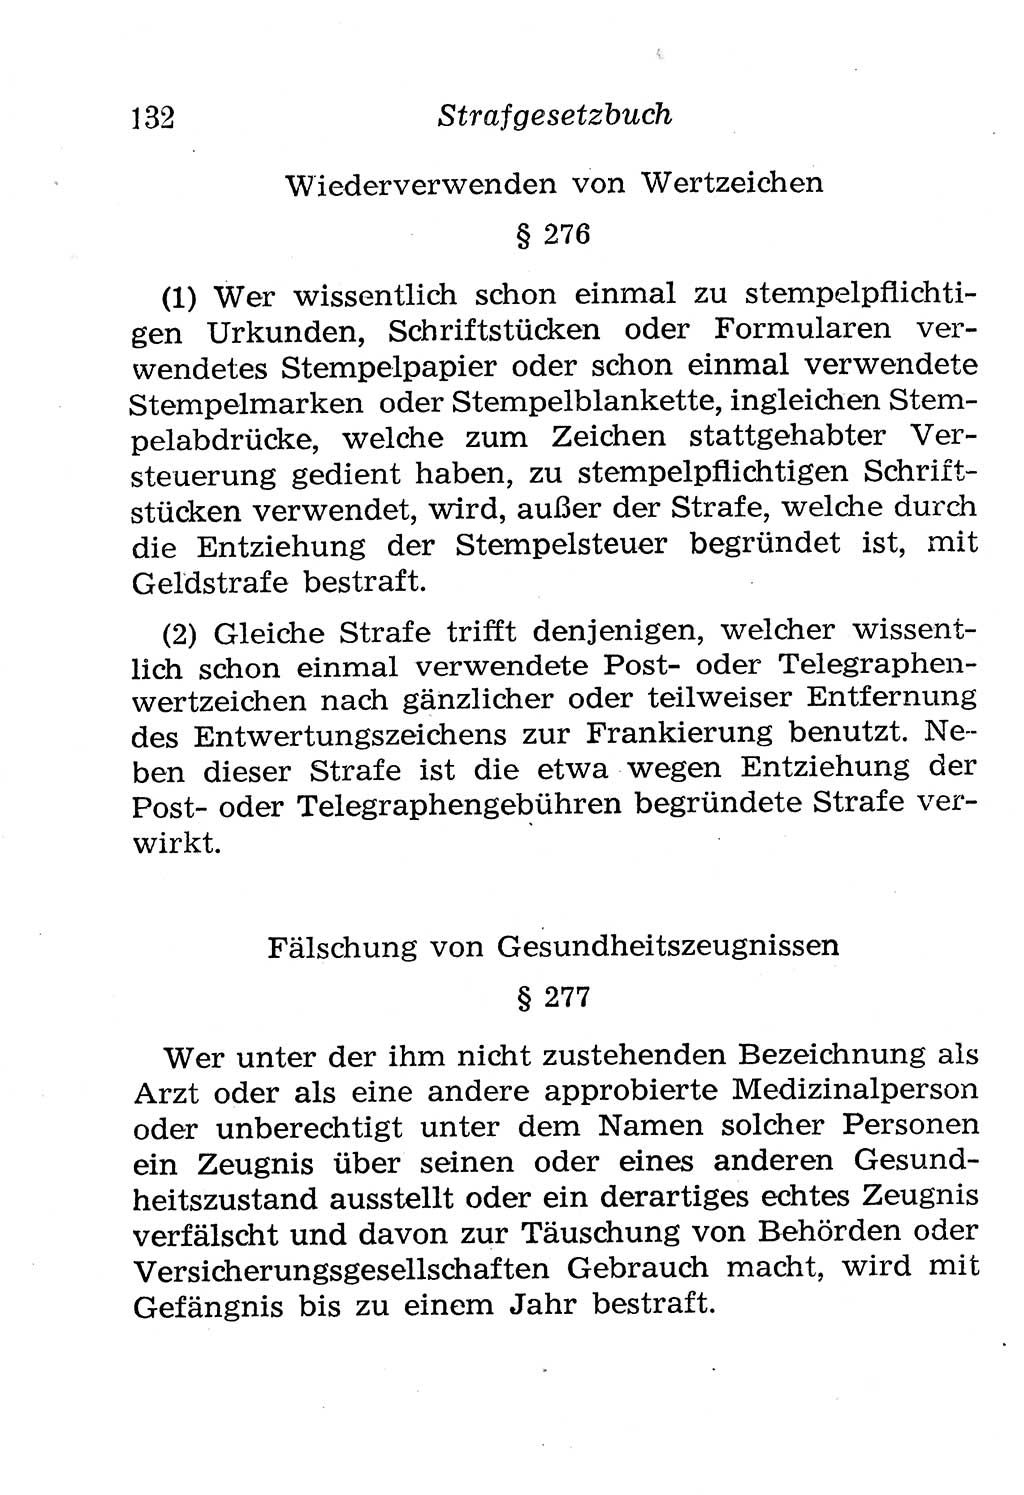 Strafgesetzbuch (StGB) und andere Strafgesetze [Deutsche Demokratische Republik (DDR)] 1958, Seite 132 (StGB Strafges. DDR 1958, S. 132)